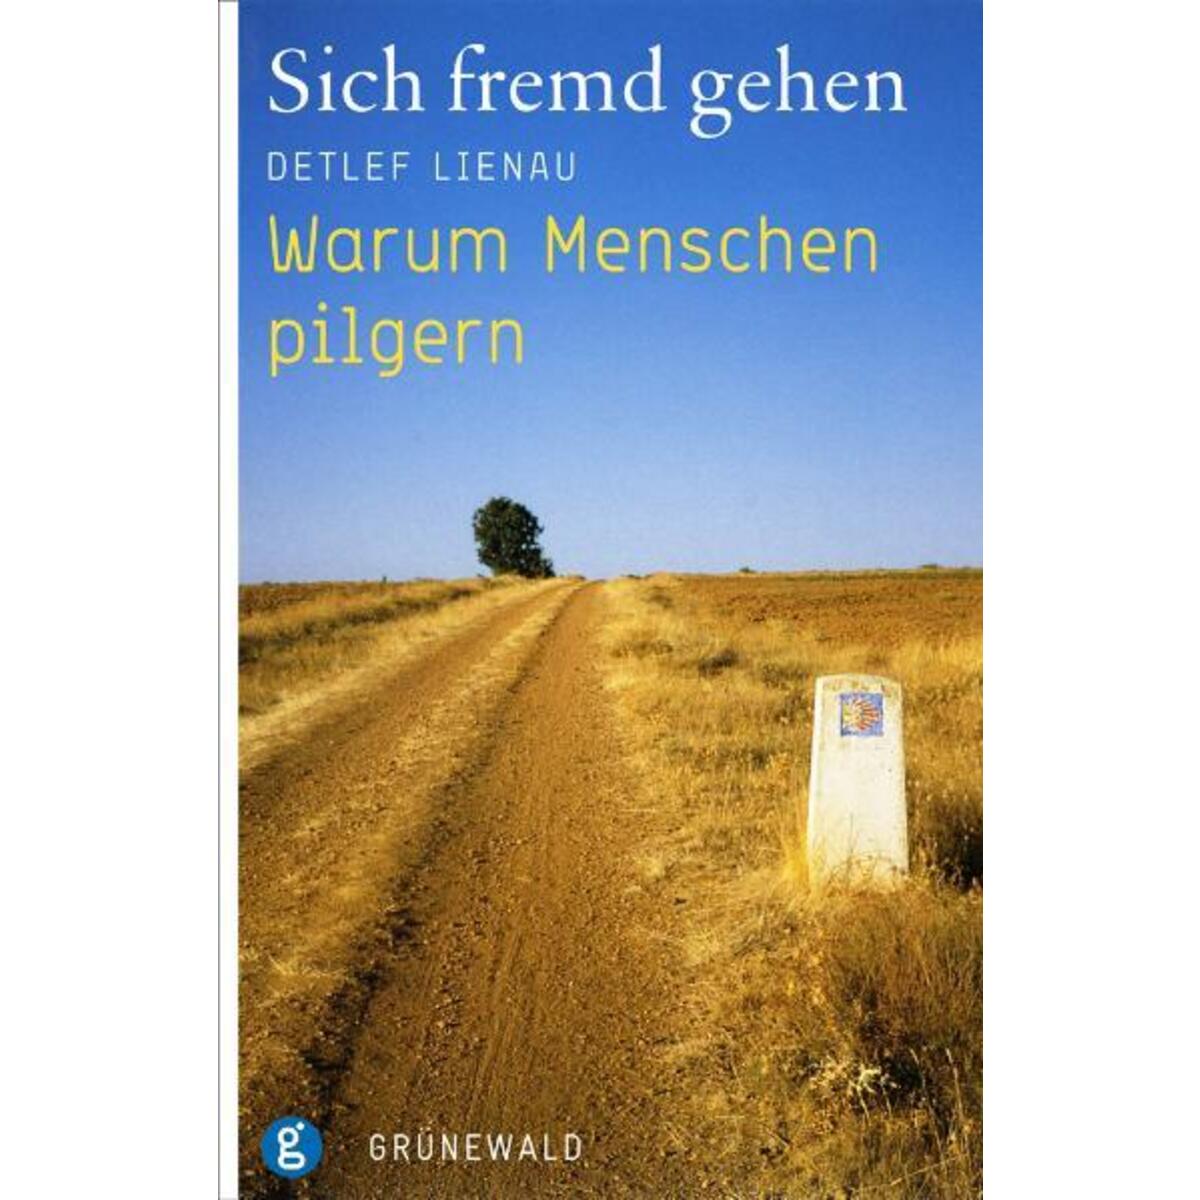 Sich fremd gehen von Matthias-Grünewald-Verlag